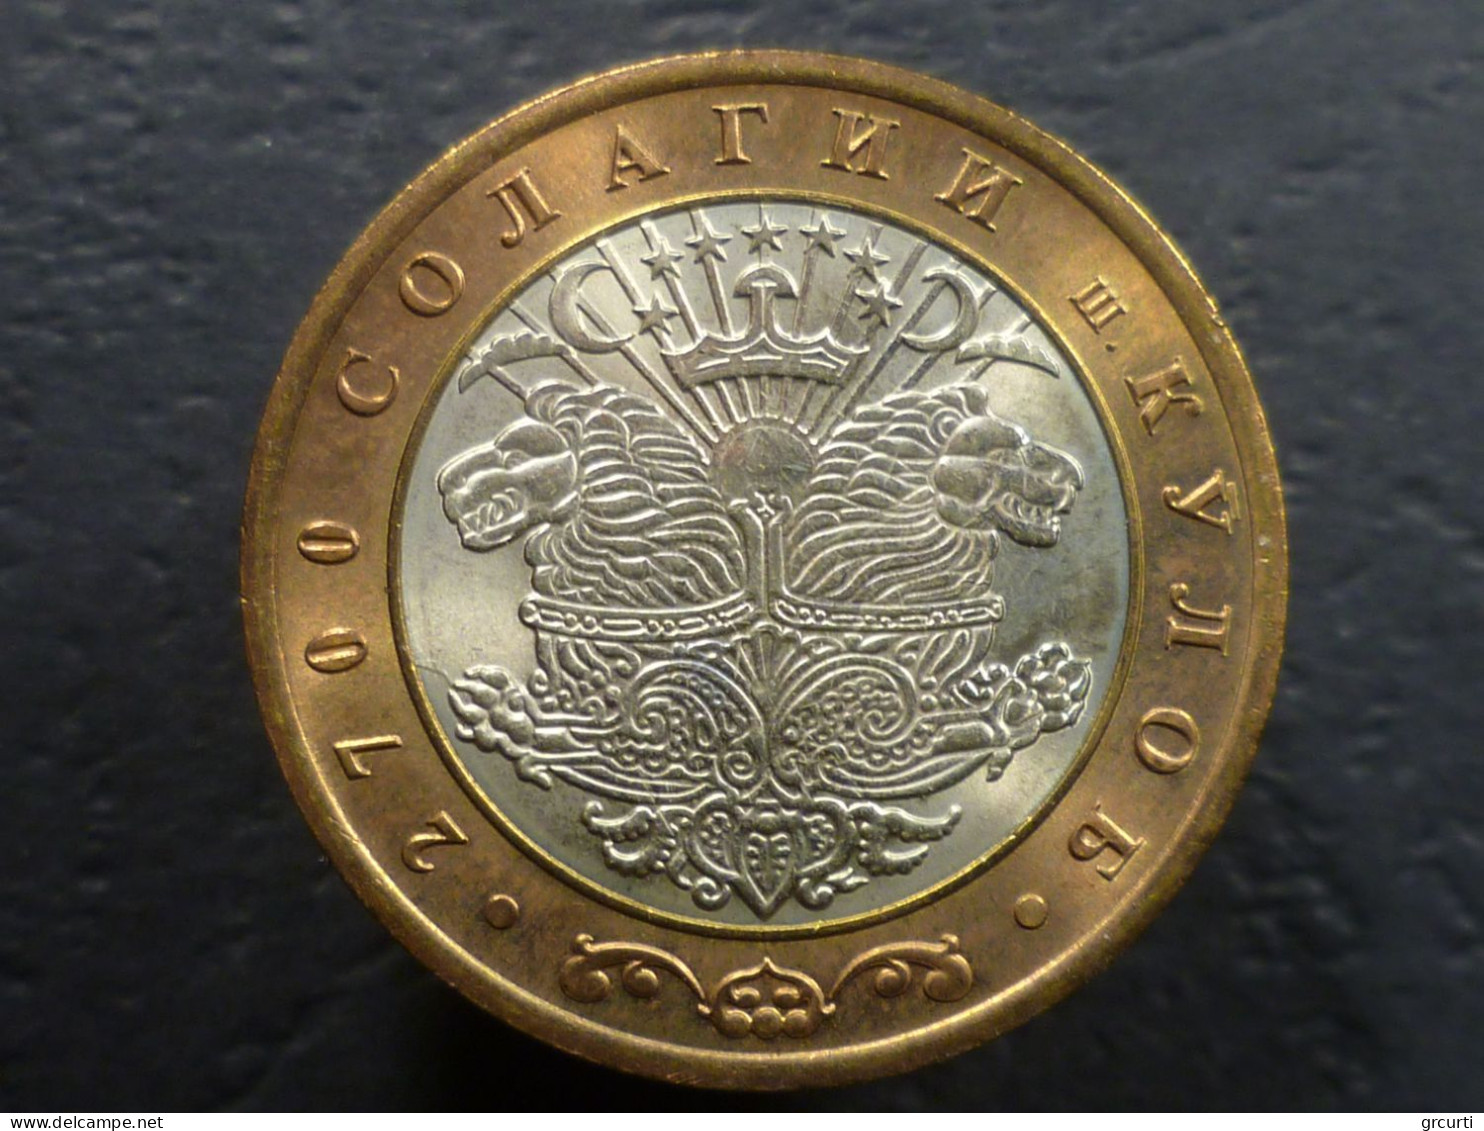 Tagikistan - Lotto di 7 monete (2001-2011)